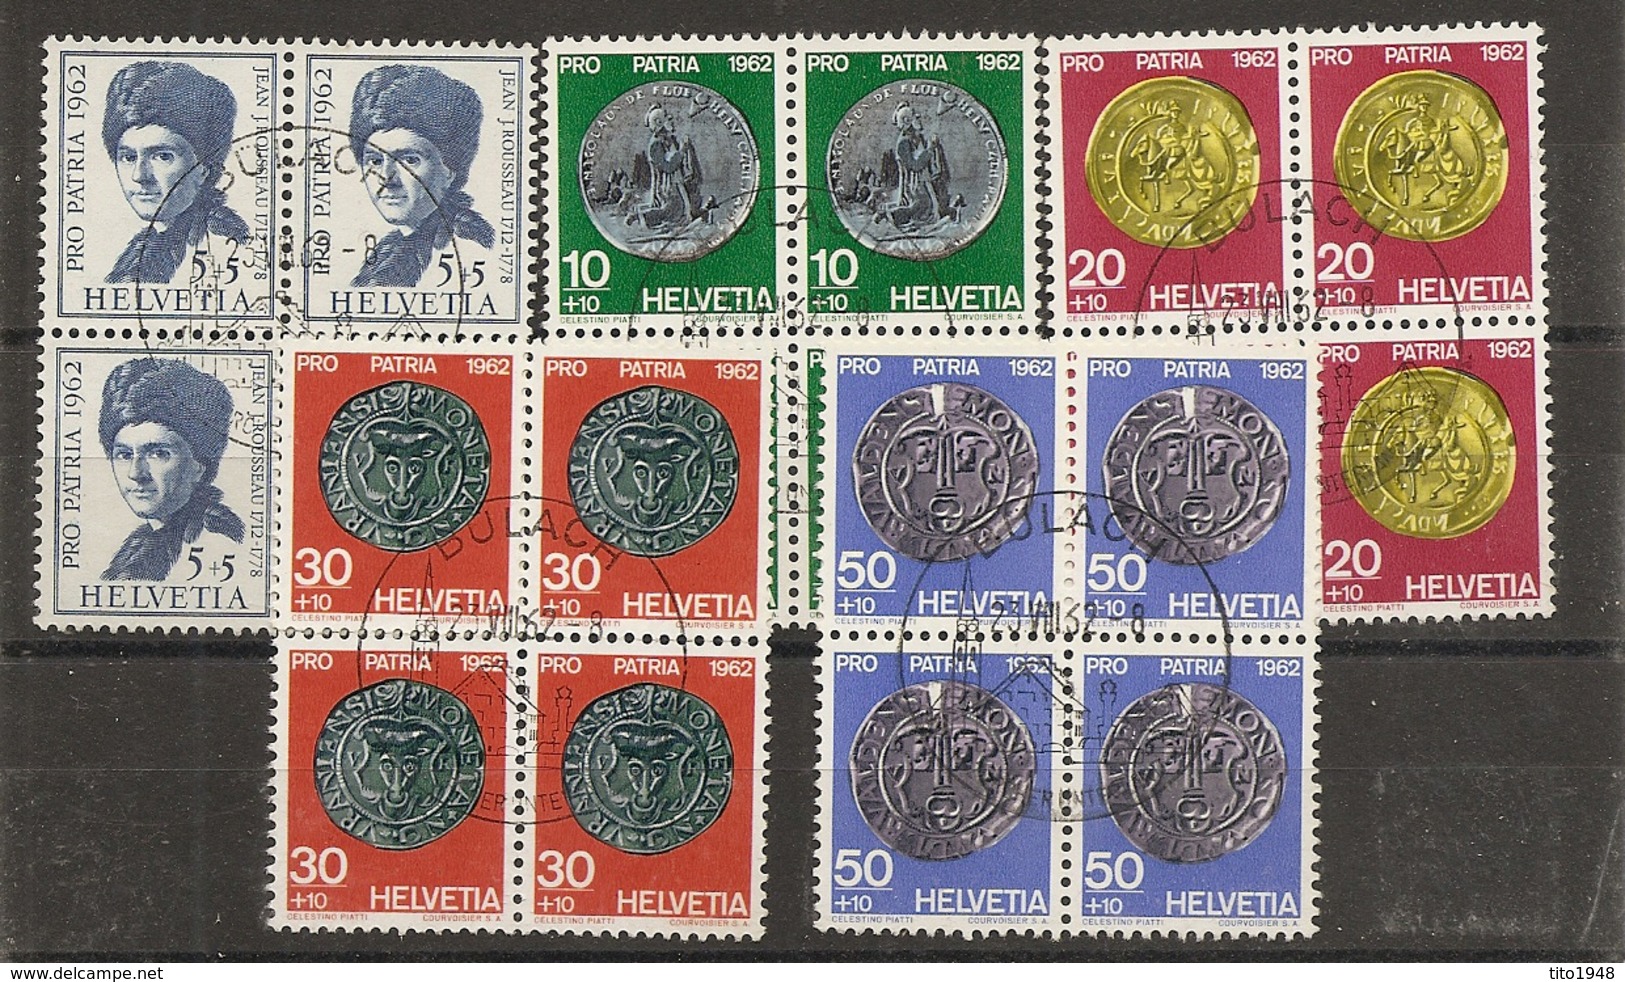 Schweiz, 1962 Pro Patria Satz Viererblock  O  Bülach 23.8.1962, Siehe Scans! - Used Stamps